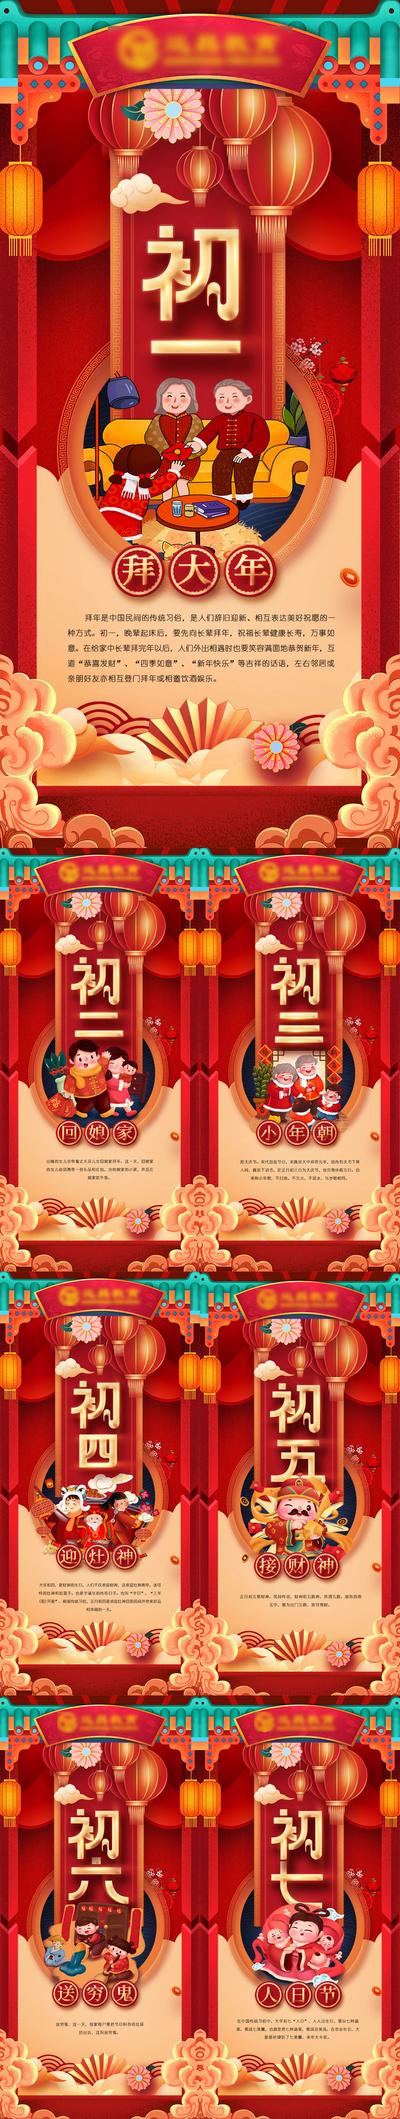 南门网 海报 中国传统节日 春节习俗 初一 过大年 插画 系列